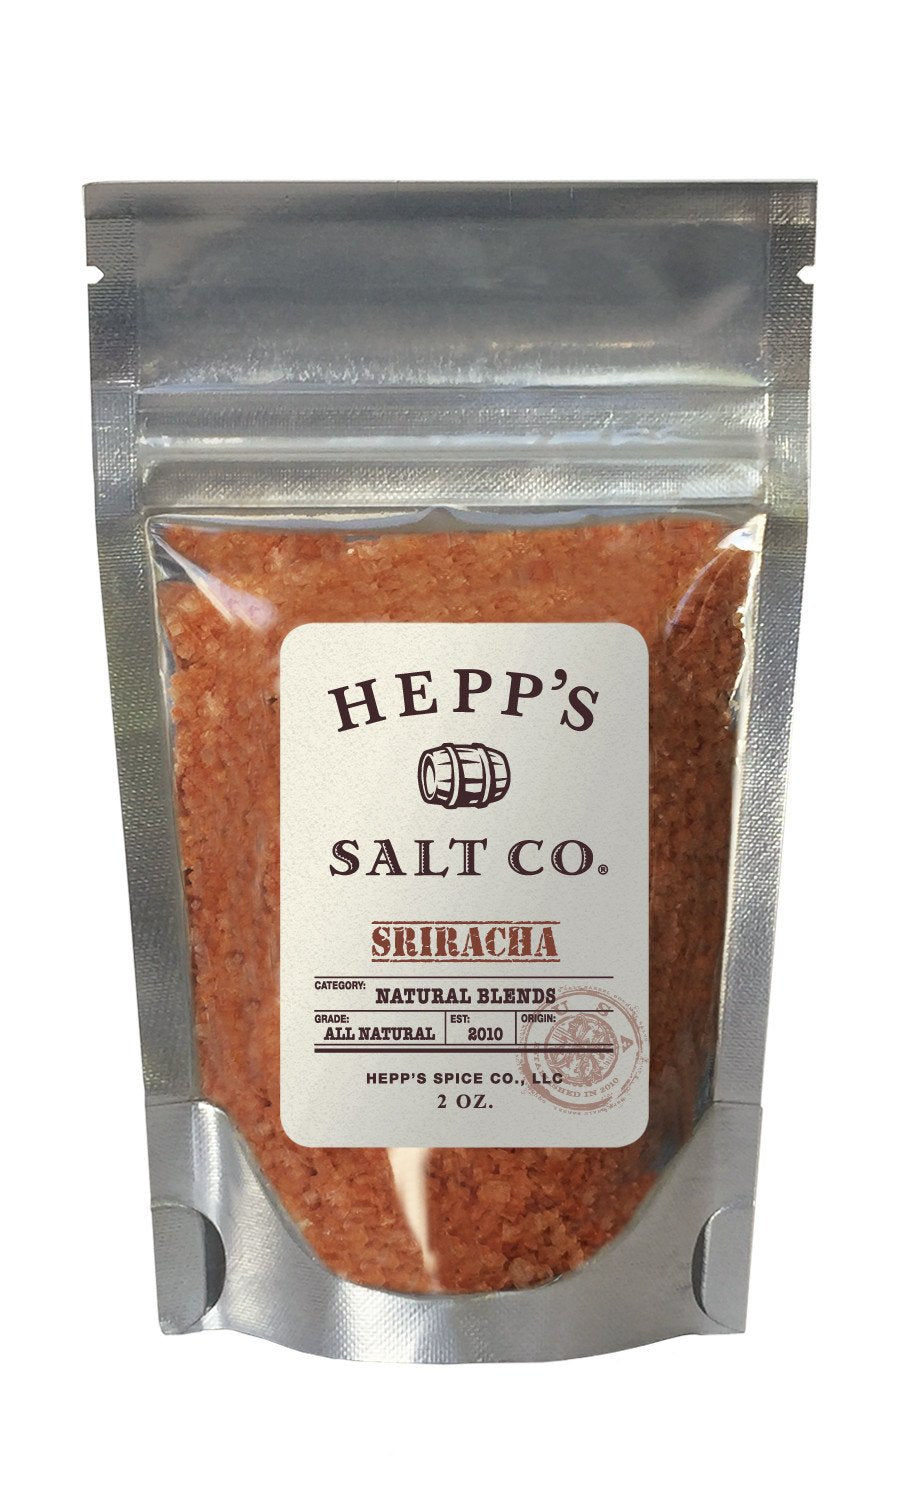 Hepp's Salt Co., Sriracha Sea Salt, 2.5 oz